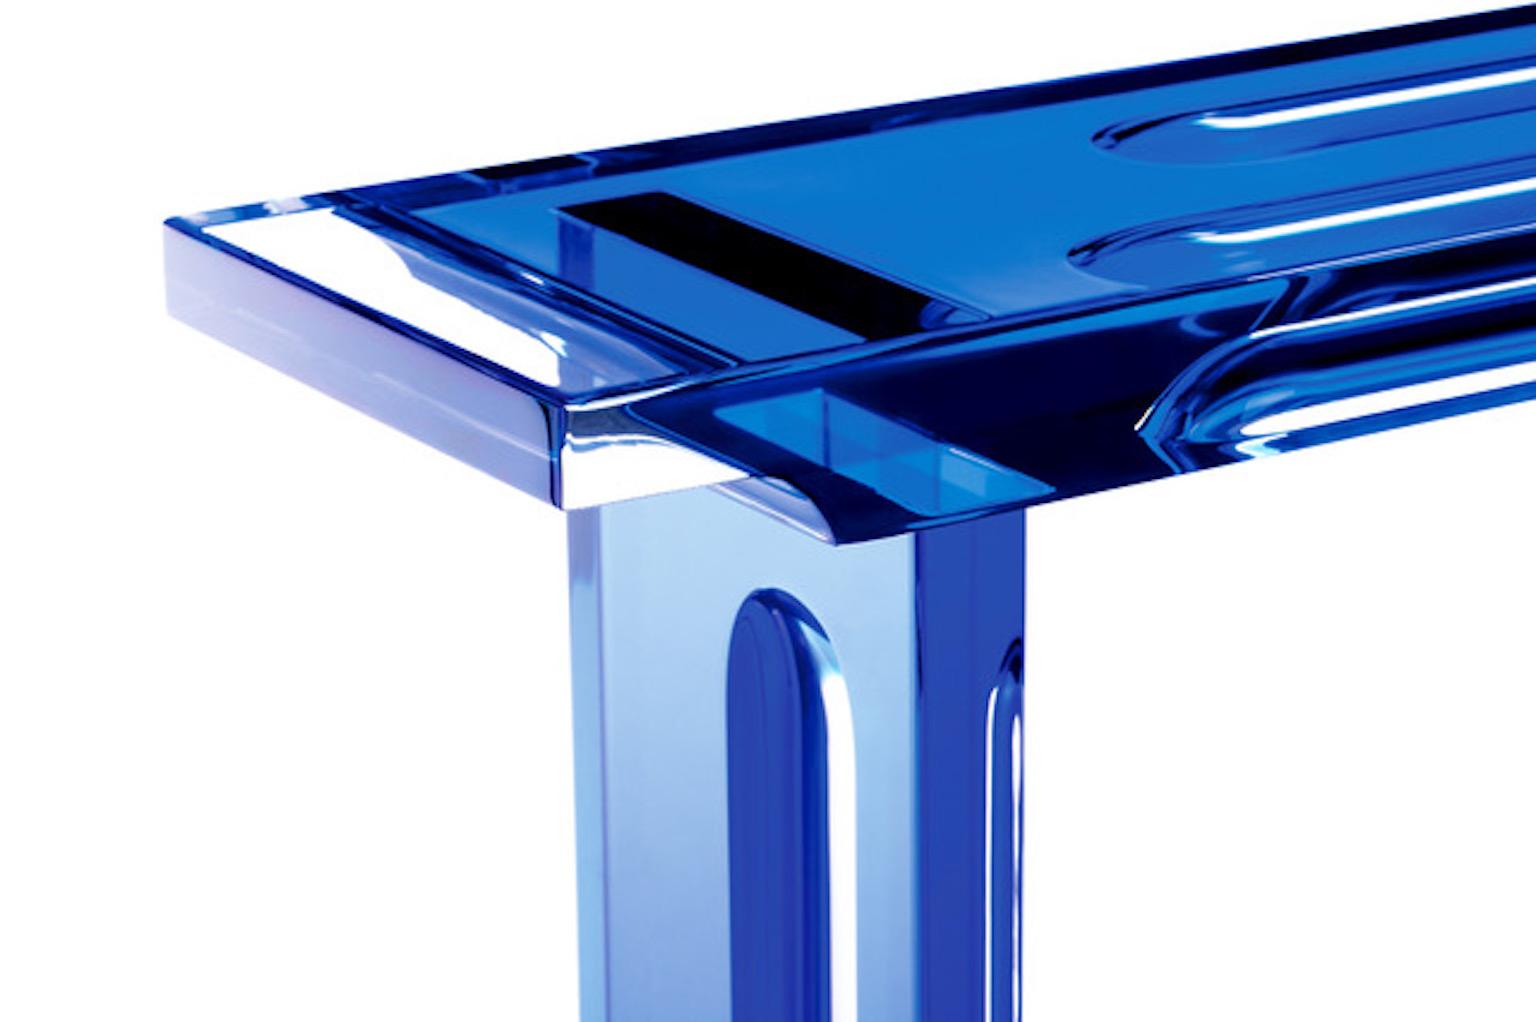 Console deep blue model in blue plexiglass.

 